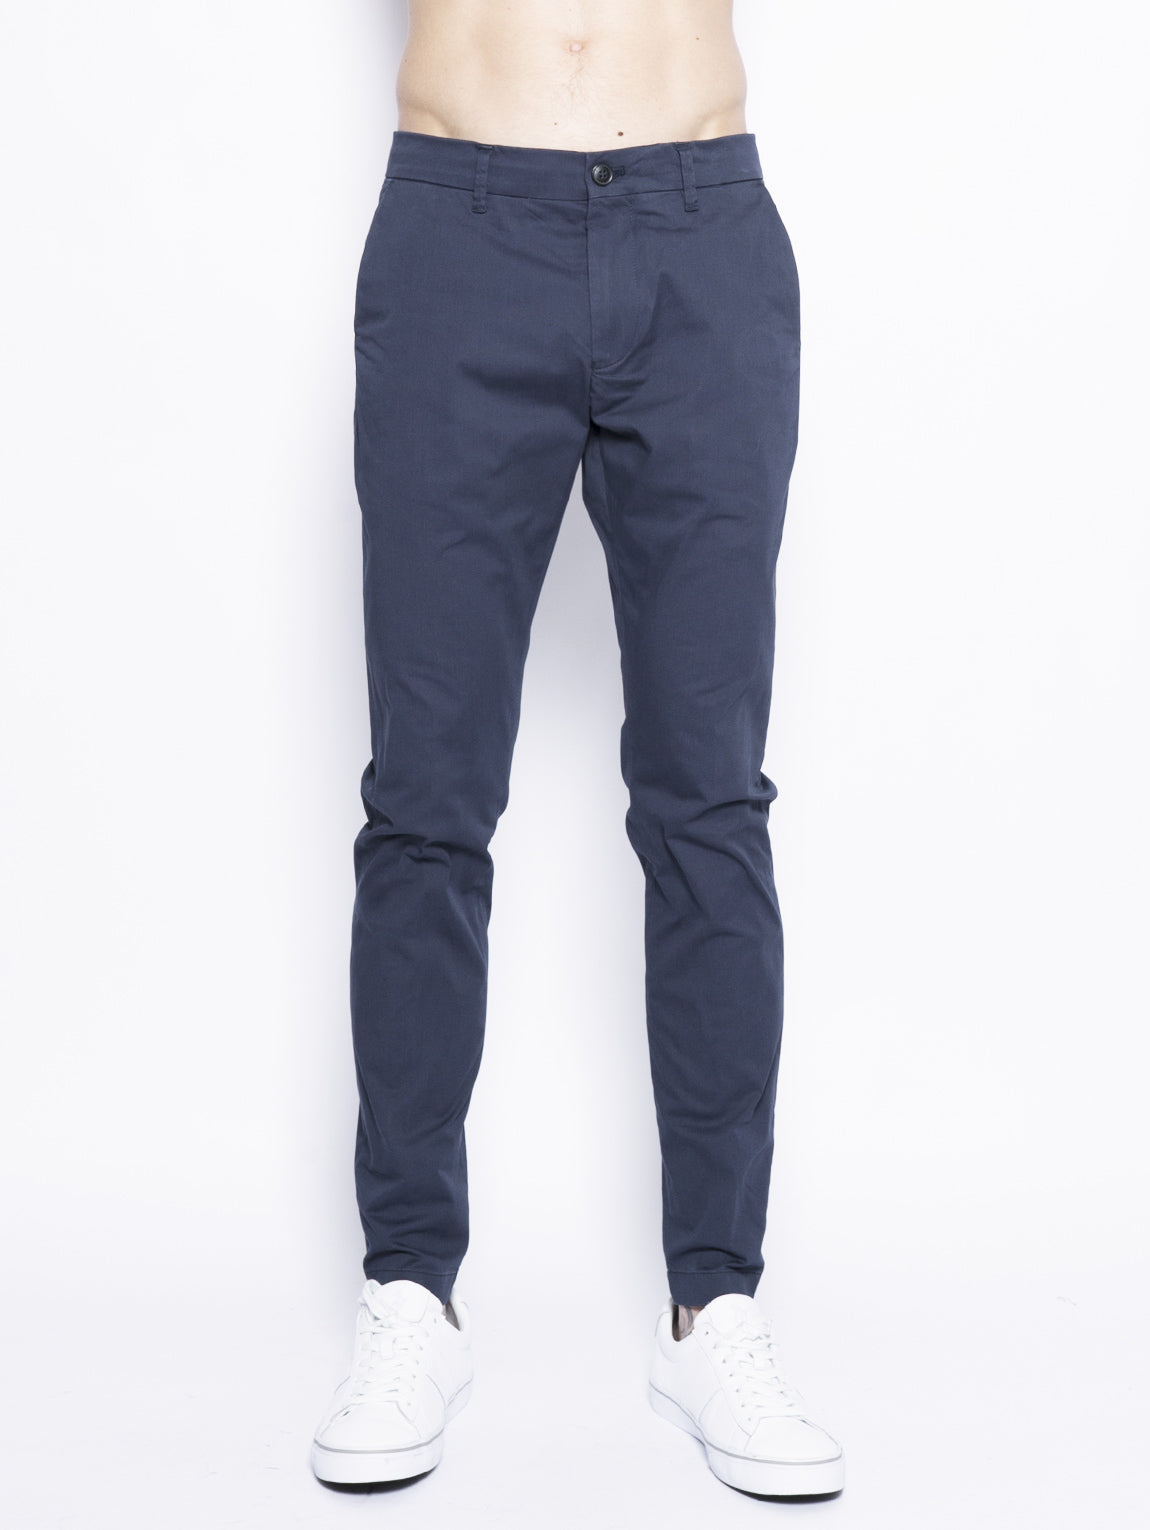 CLOSED-Pantalone in Cotone Elasticizzato Blu-TRYME Shop